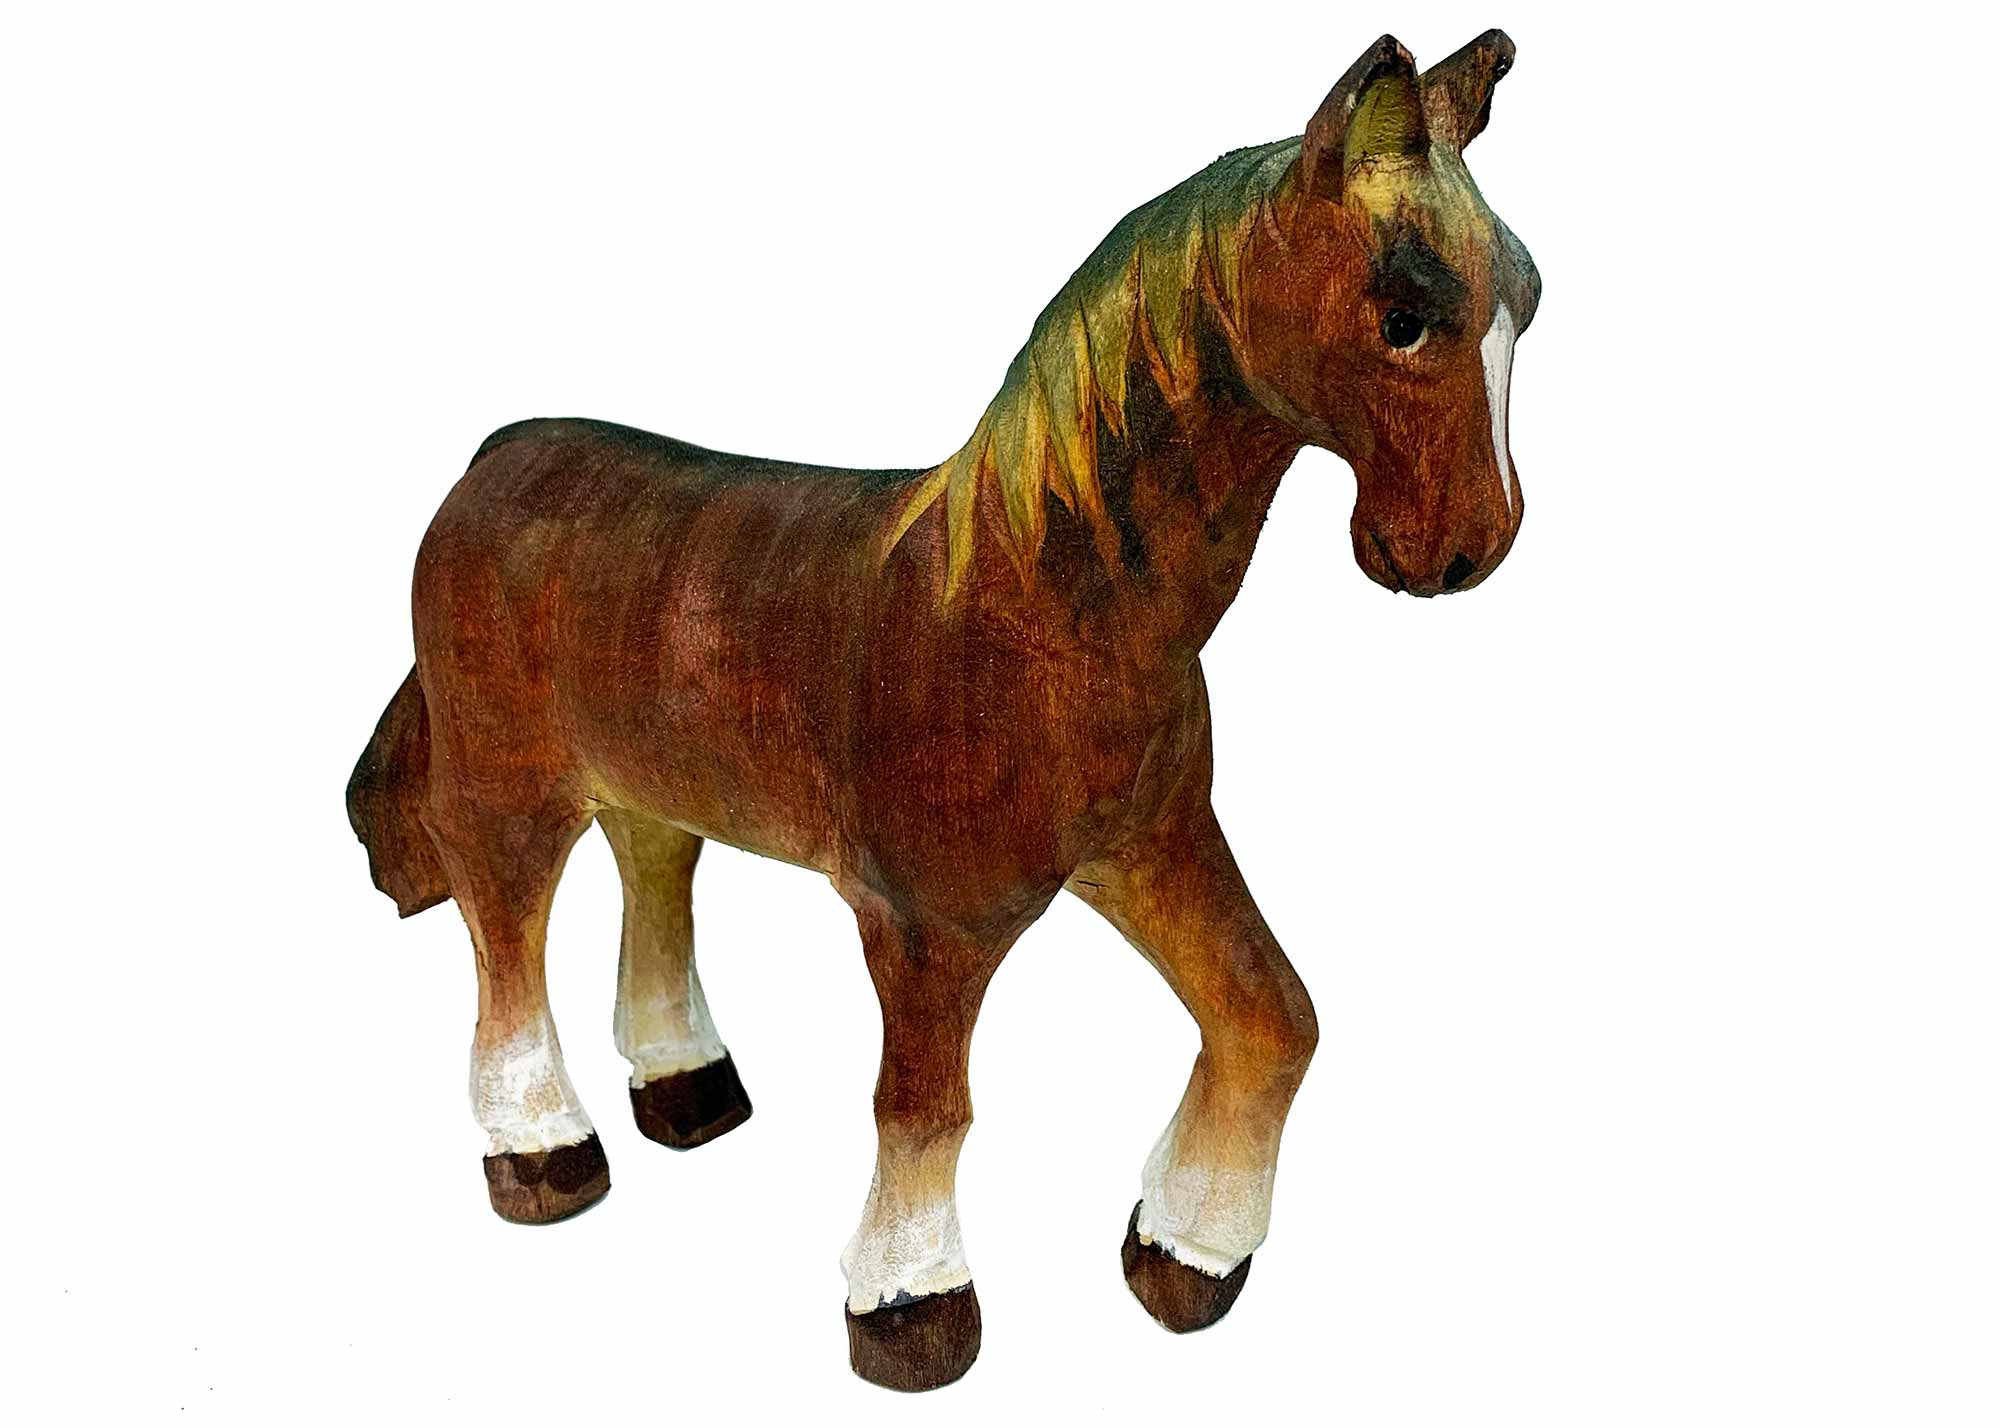 Buy Carved Horse Figurine - Brown at GoldenCockerel.com